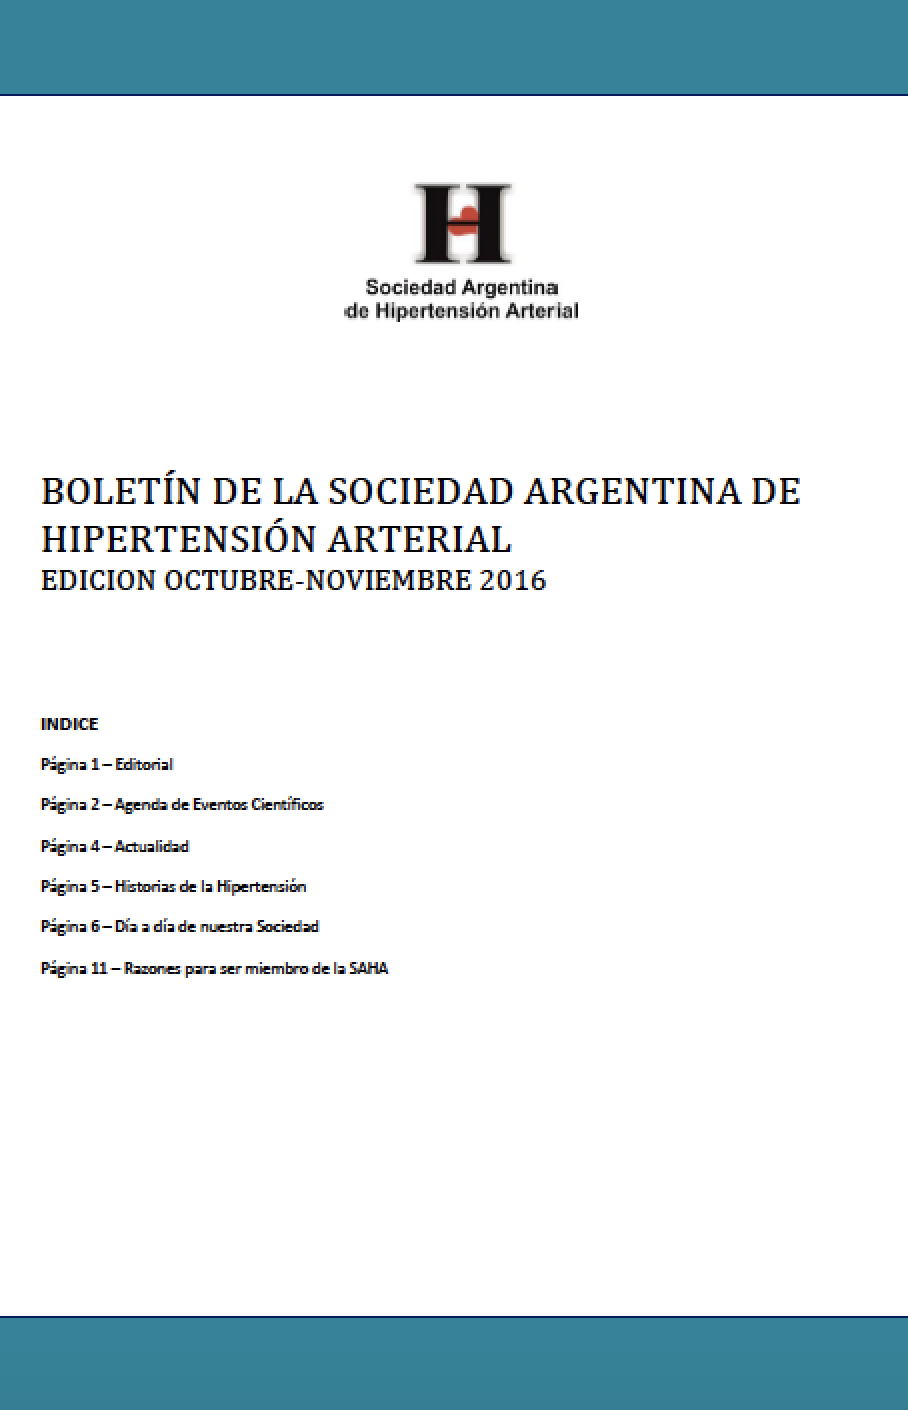 Boletín Periódico Sociedad Argentina de Hipertensión Arterial Mayo 2013